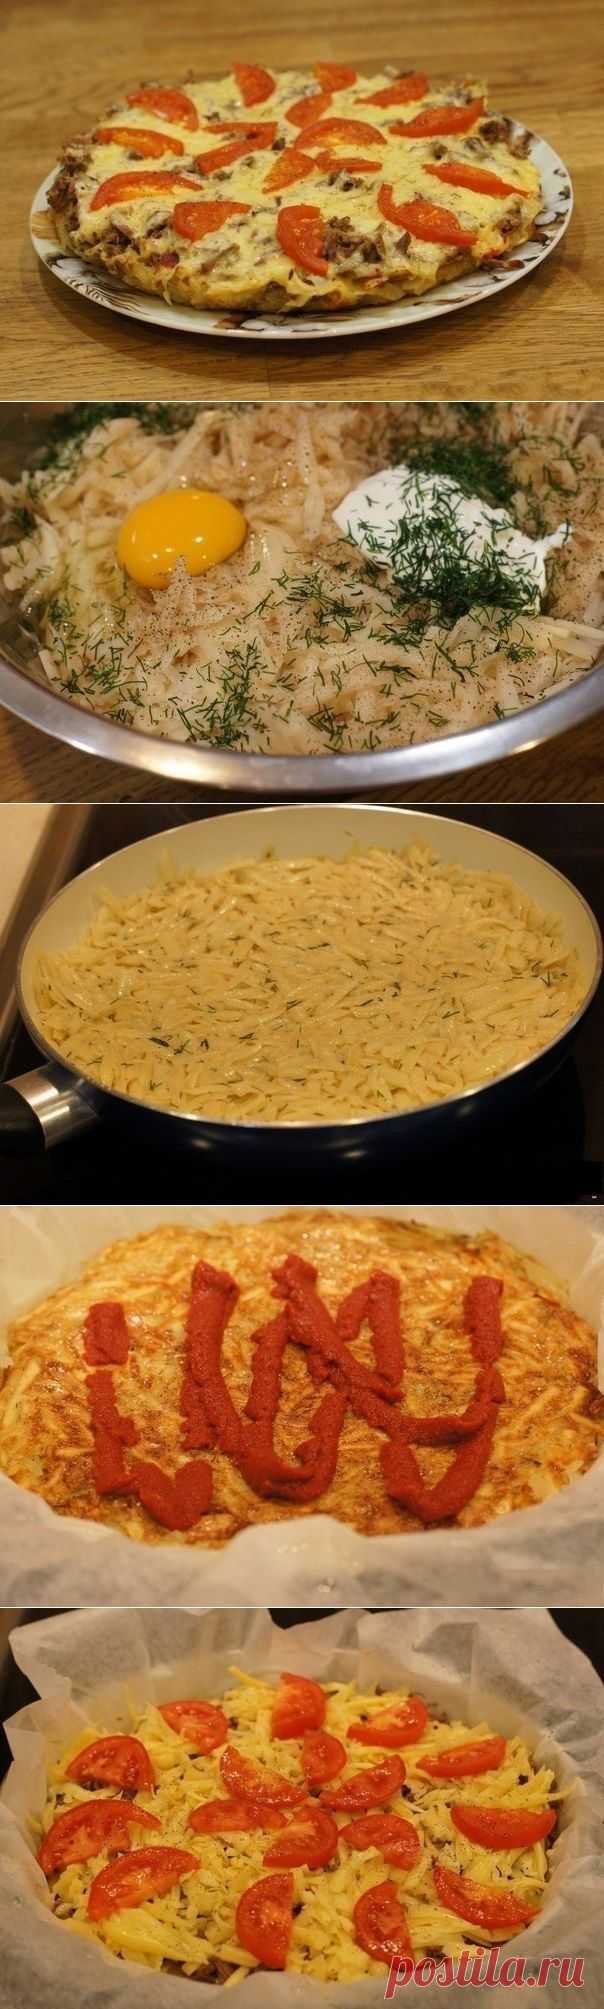 Как приготовить картофельная пицца на сковороде. - рецепт, ингридиенты и фотографии